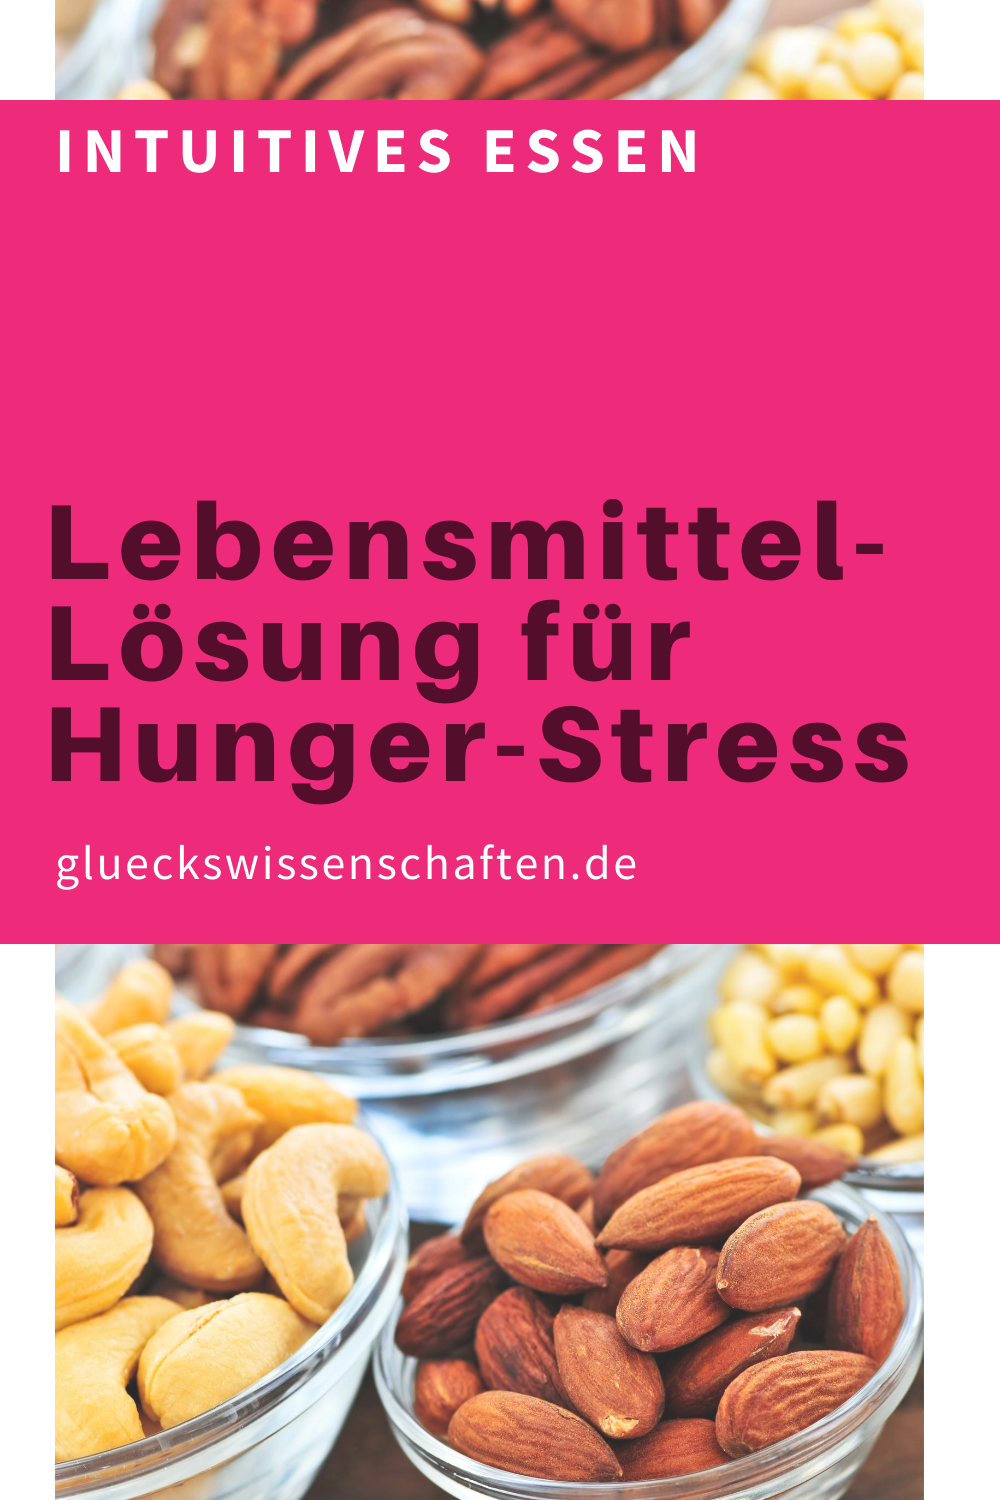 Glueckswissenschaften- Intuitives Essen - Schlaraffenland -Lebensmittel-Lösung für Hunger-Stress